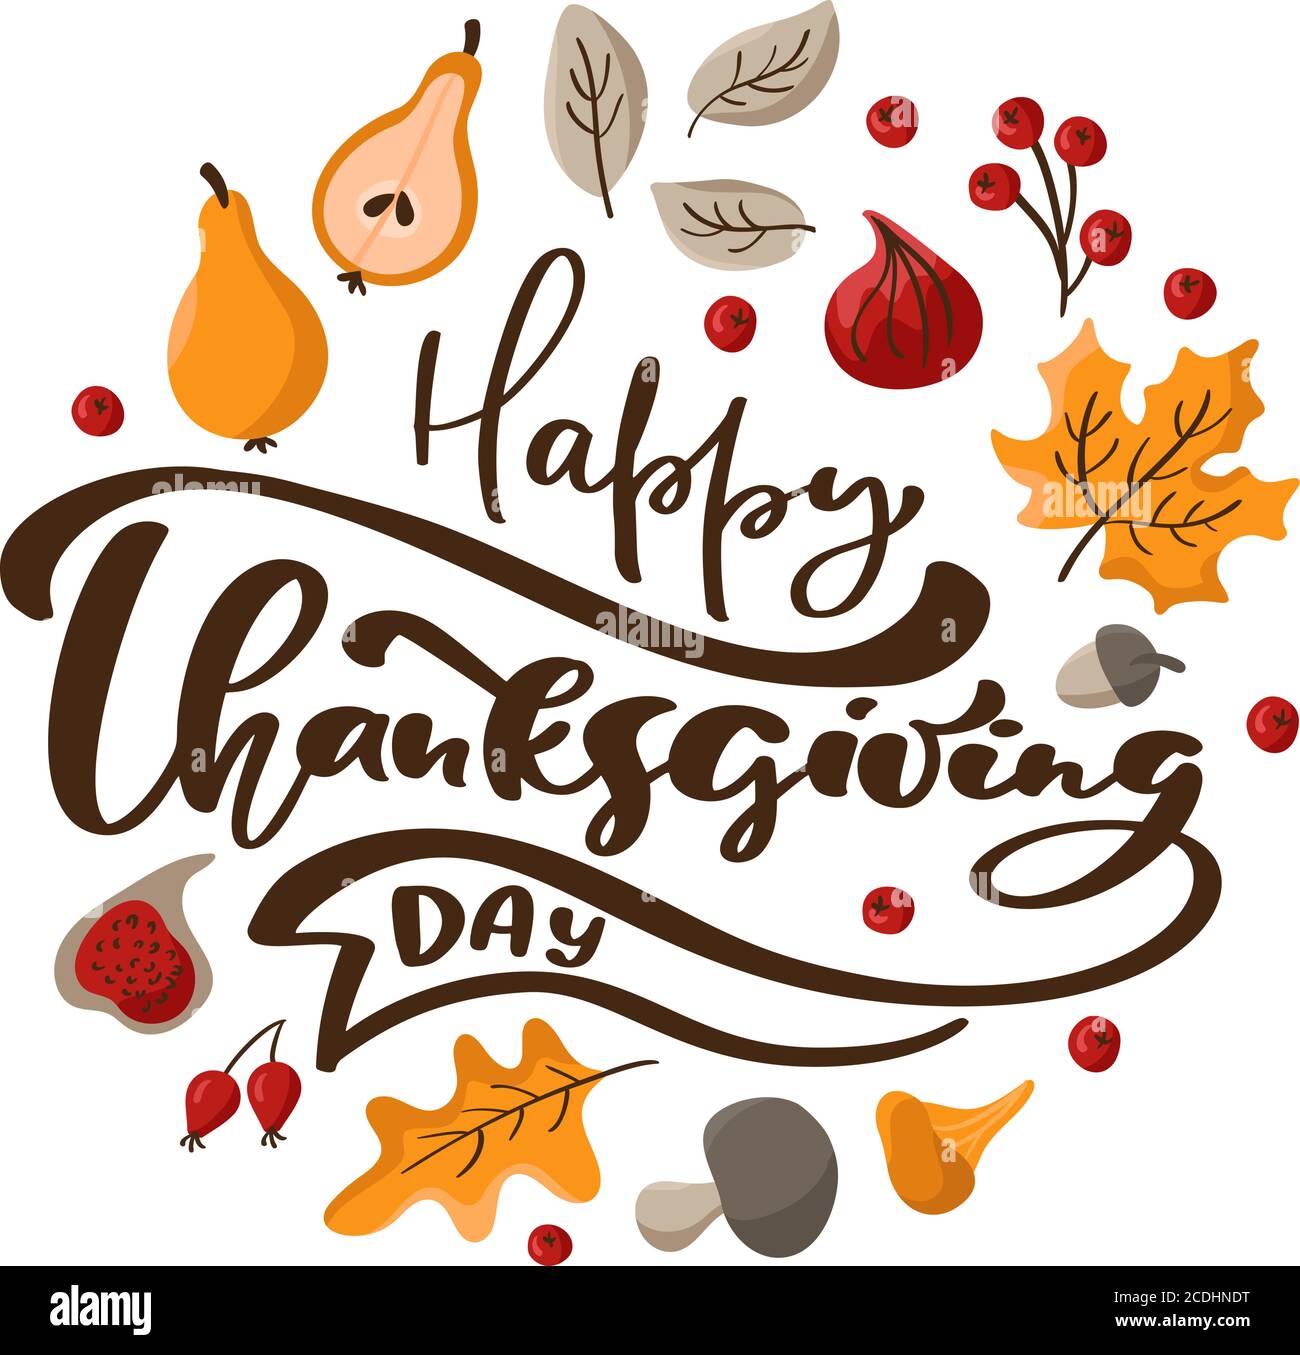 Joyeux jour de Thanksgiving vecteur texte calligraphique avec cadre de couronne d'automne avec des feuilles d'orange, des baies, des champignons et des poires Illustration de Vecteur